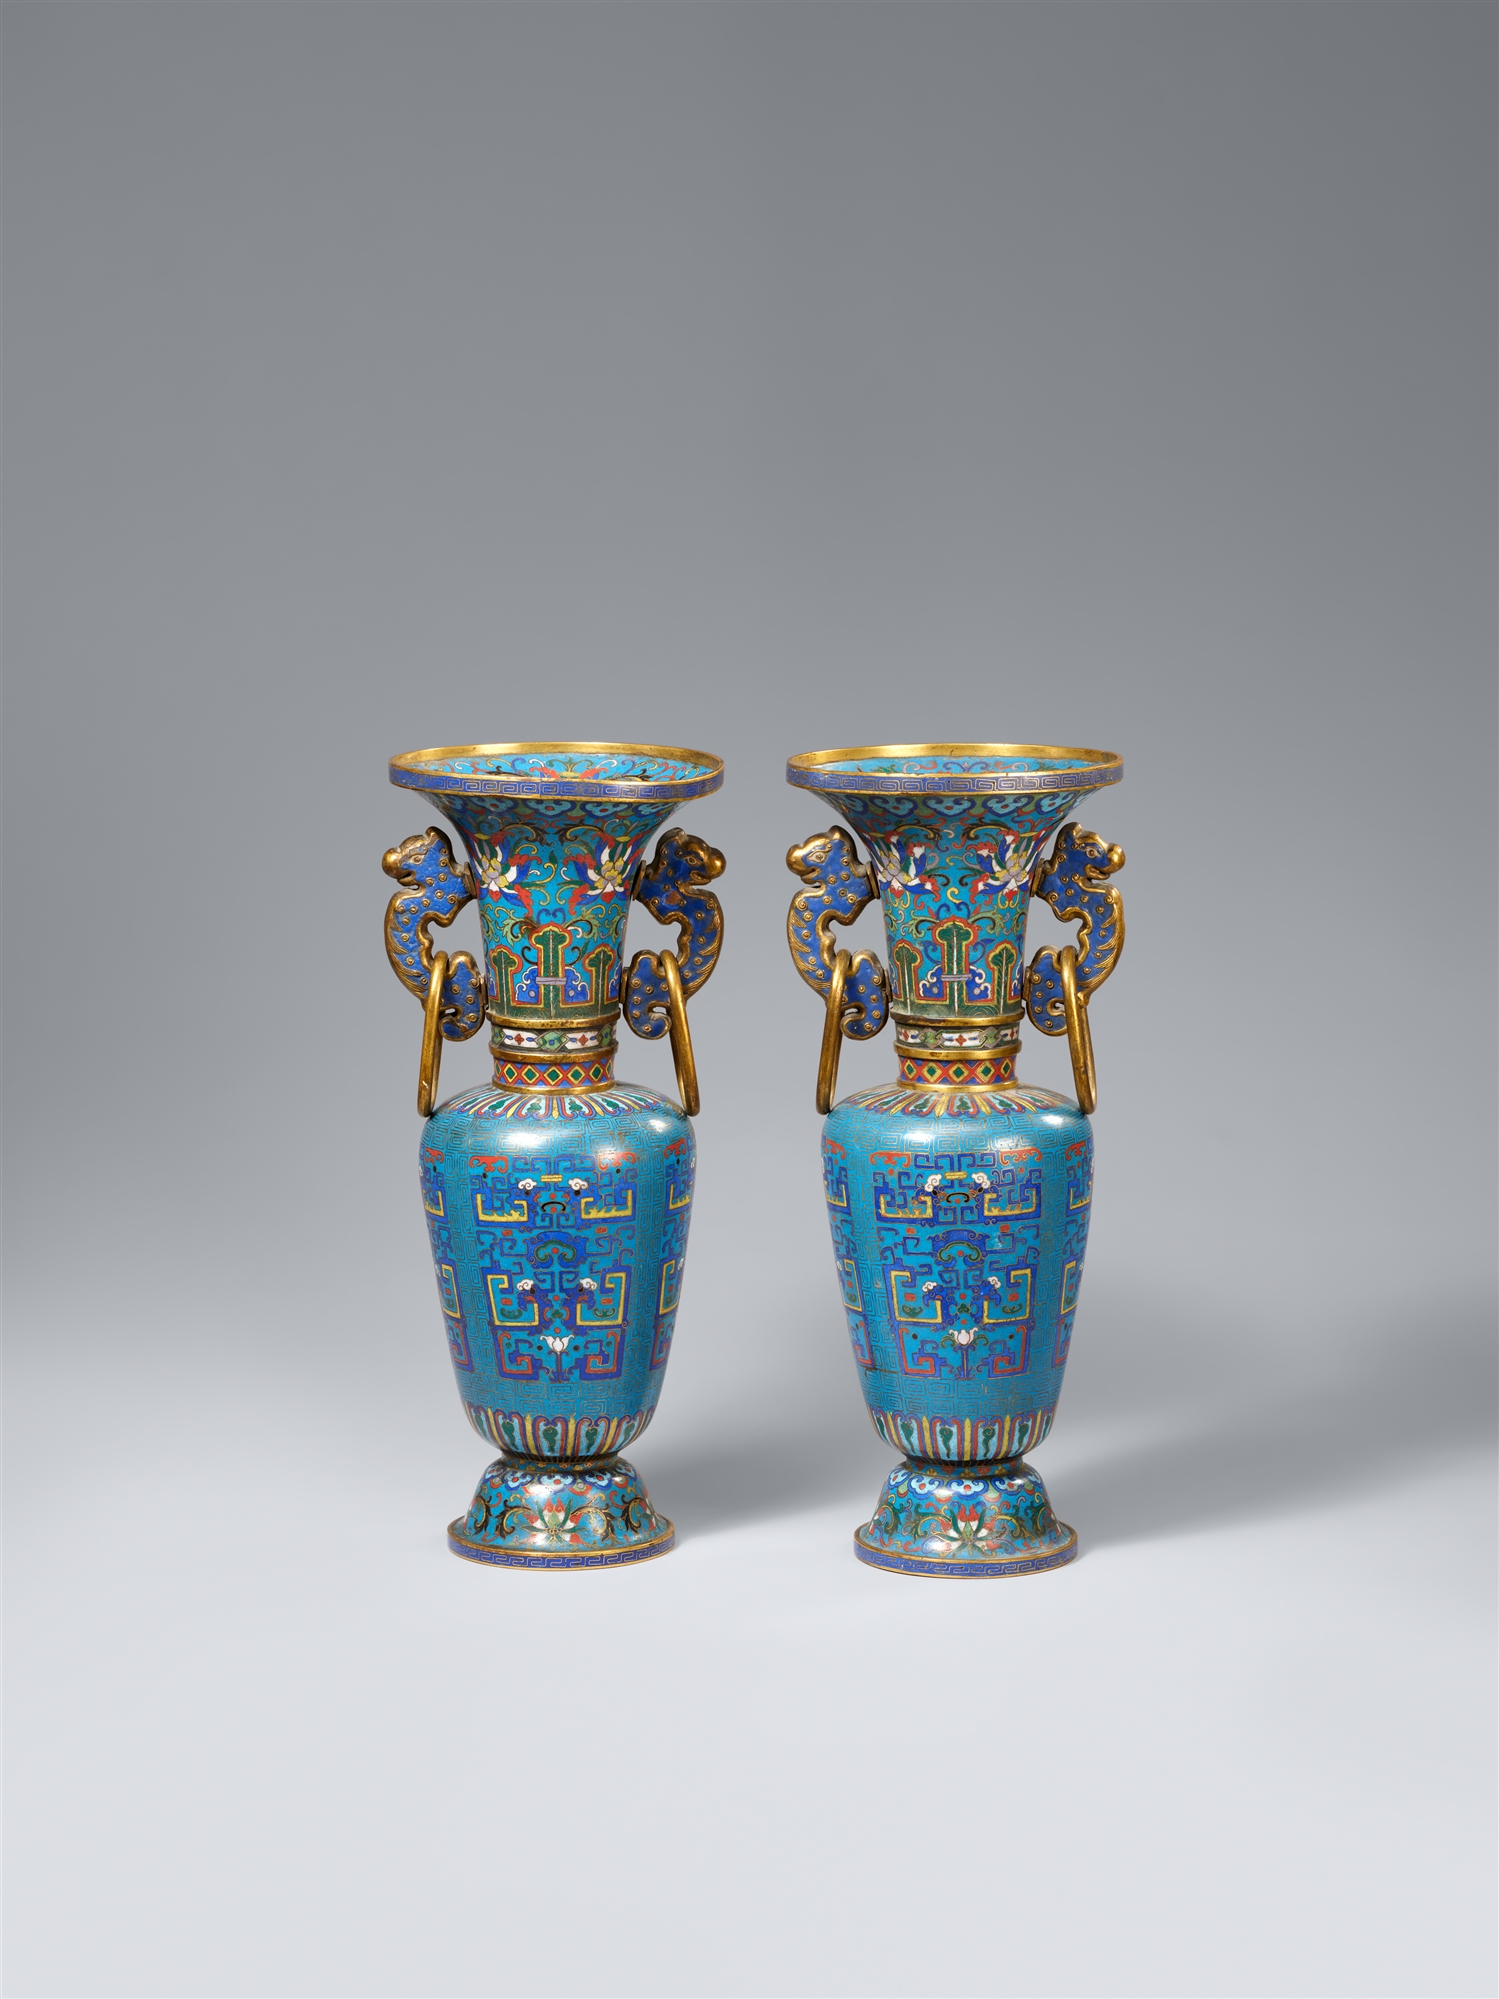 A pair of cloisonné enamel vases. Second half 19th century